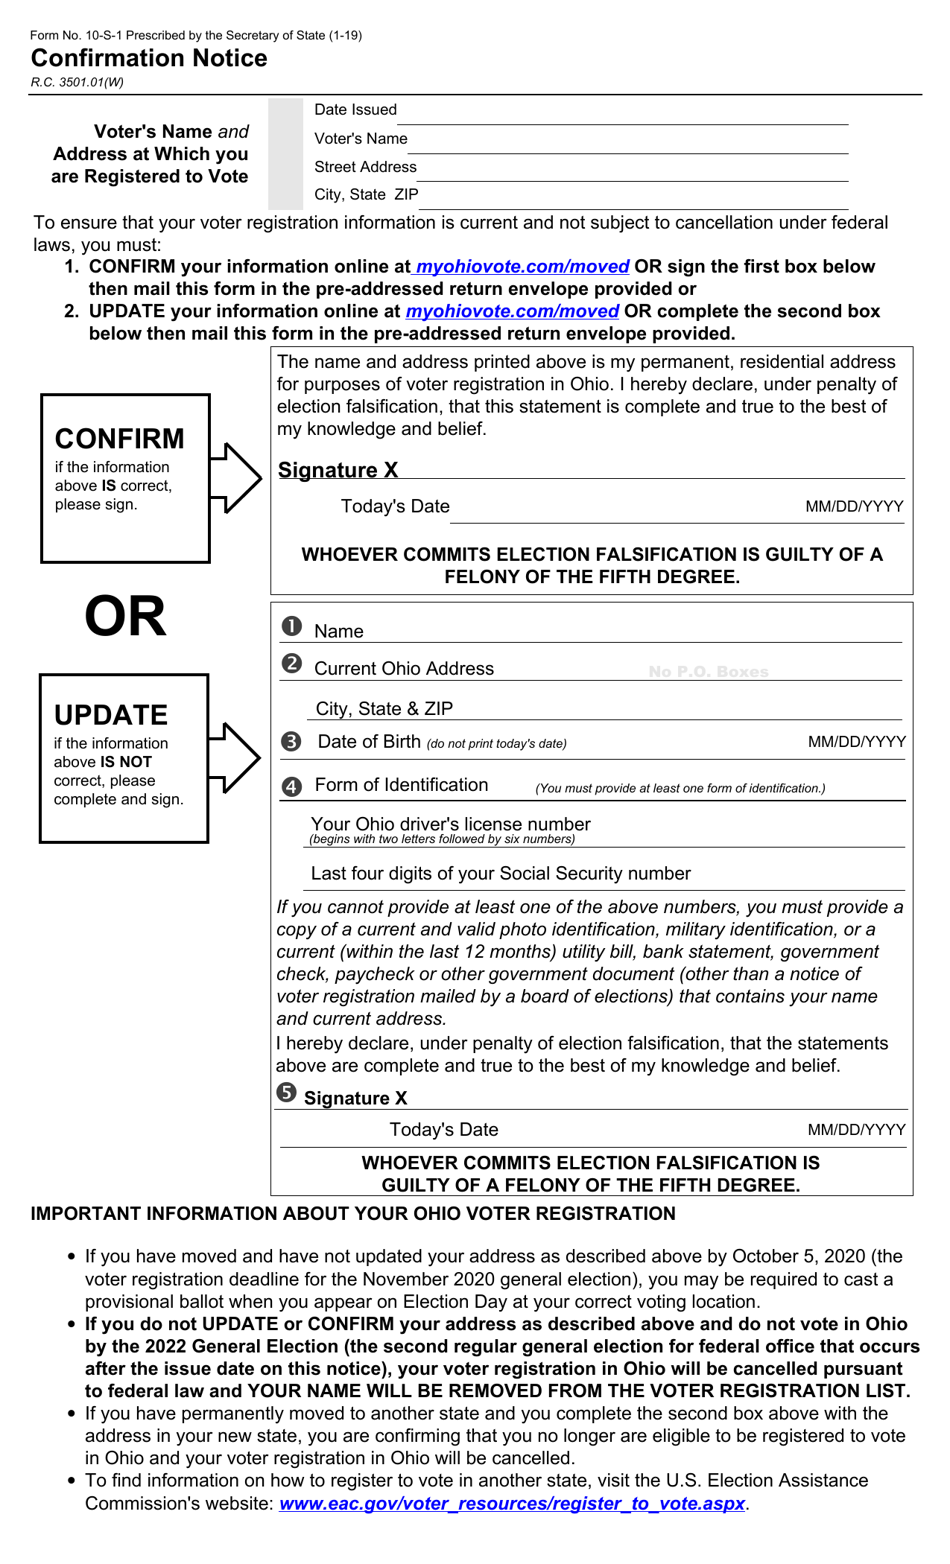 Form 10-S-1 Confirmation Notice - Ohio, Page 1